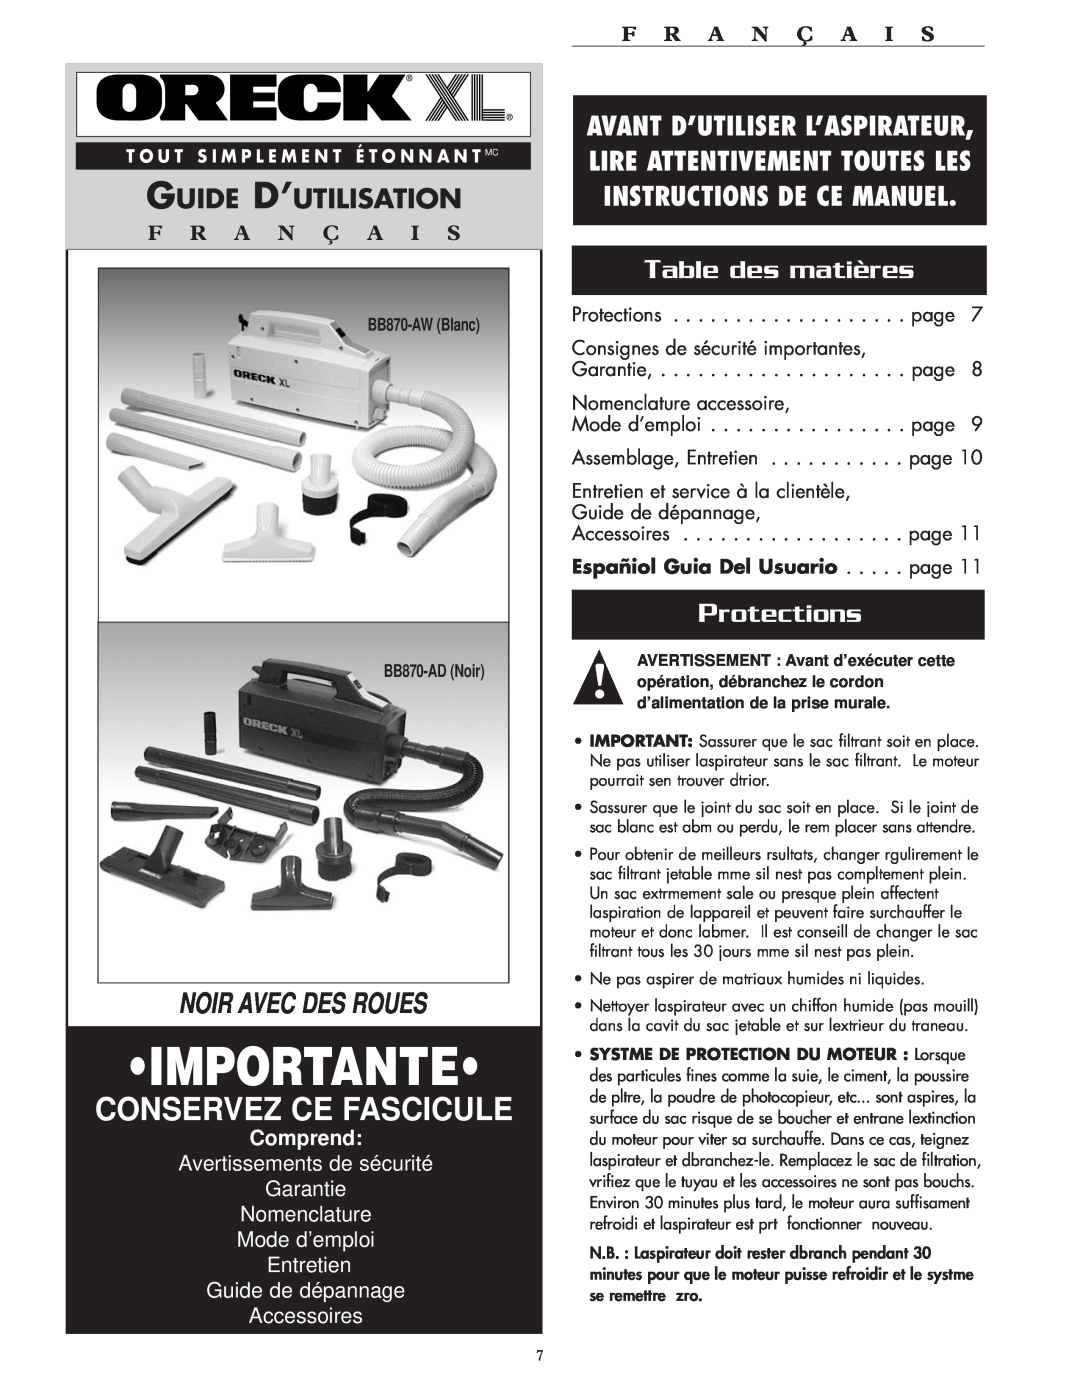 Oreck BB870AD Importante, Conservez Ce Fascicule, Guide D’Utilisation, Table des matières, Protections, F R A N Ç A I S 